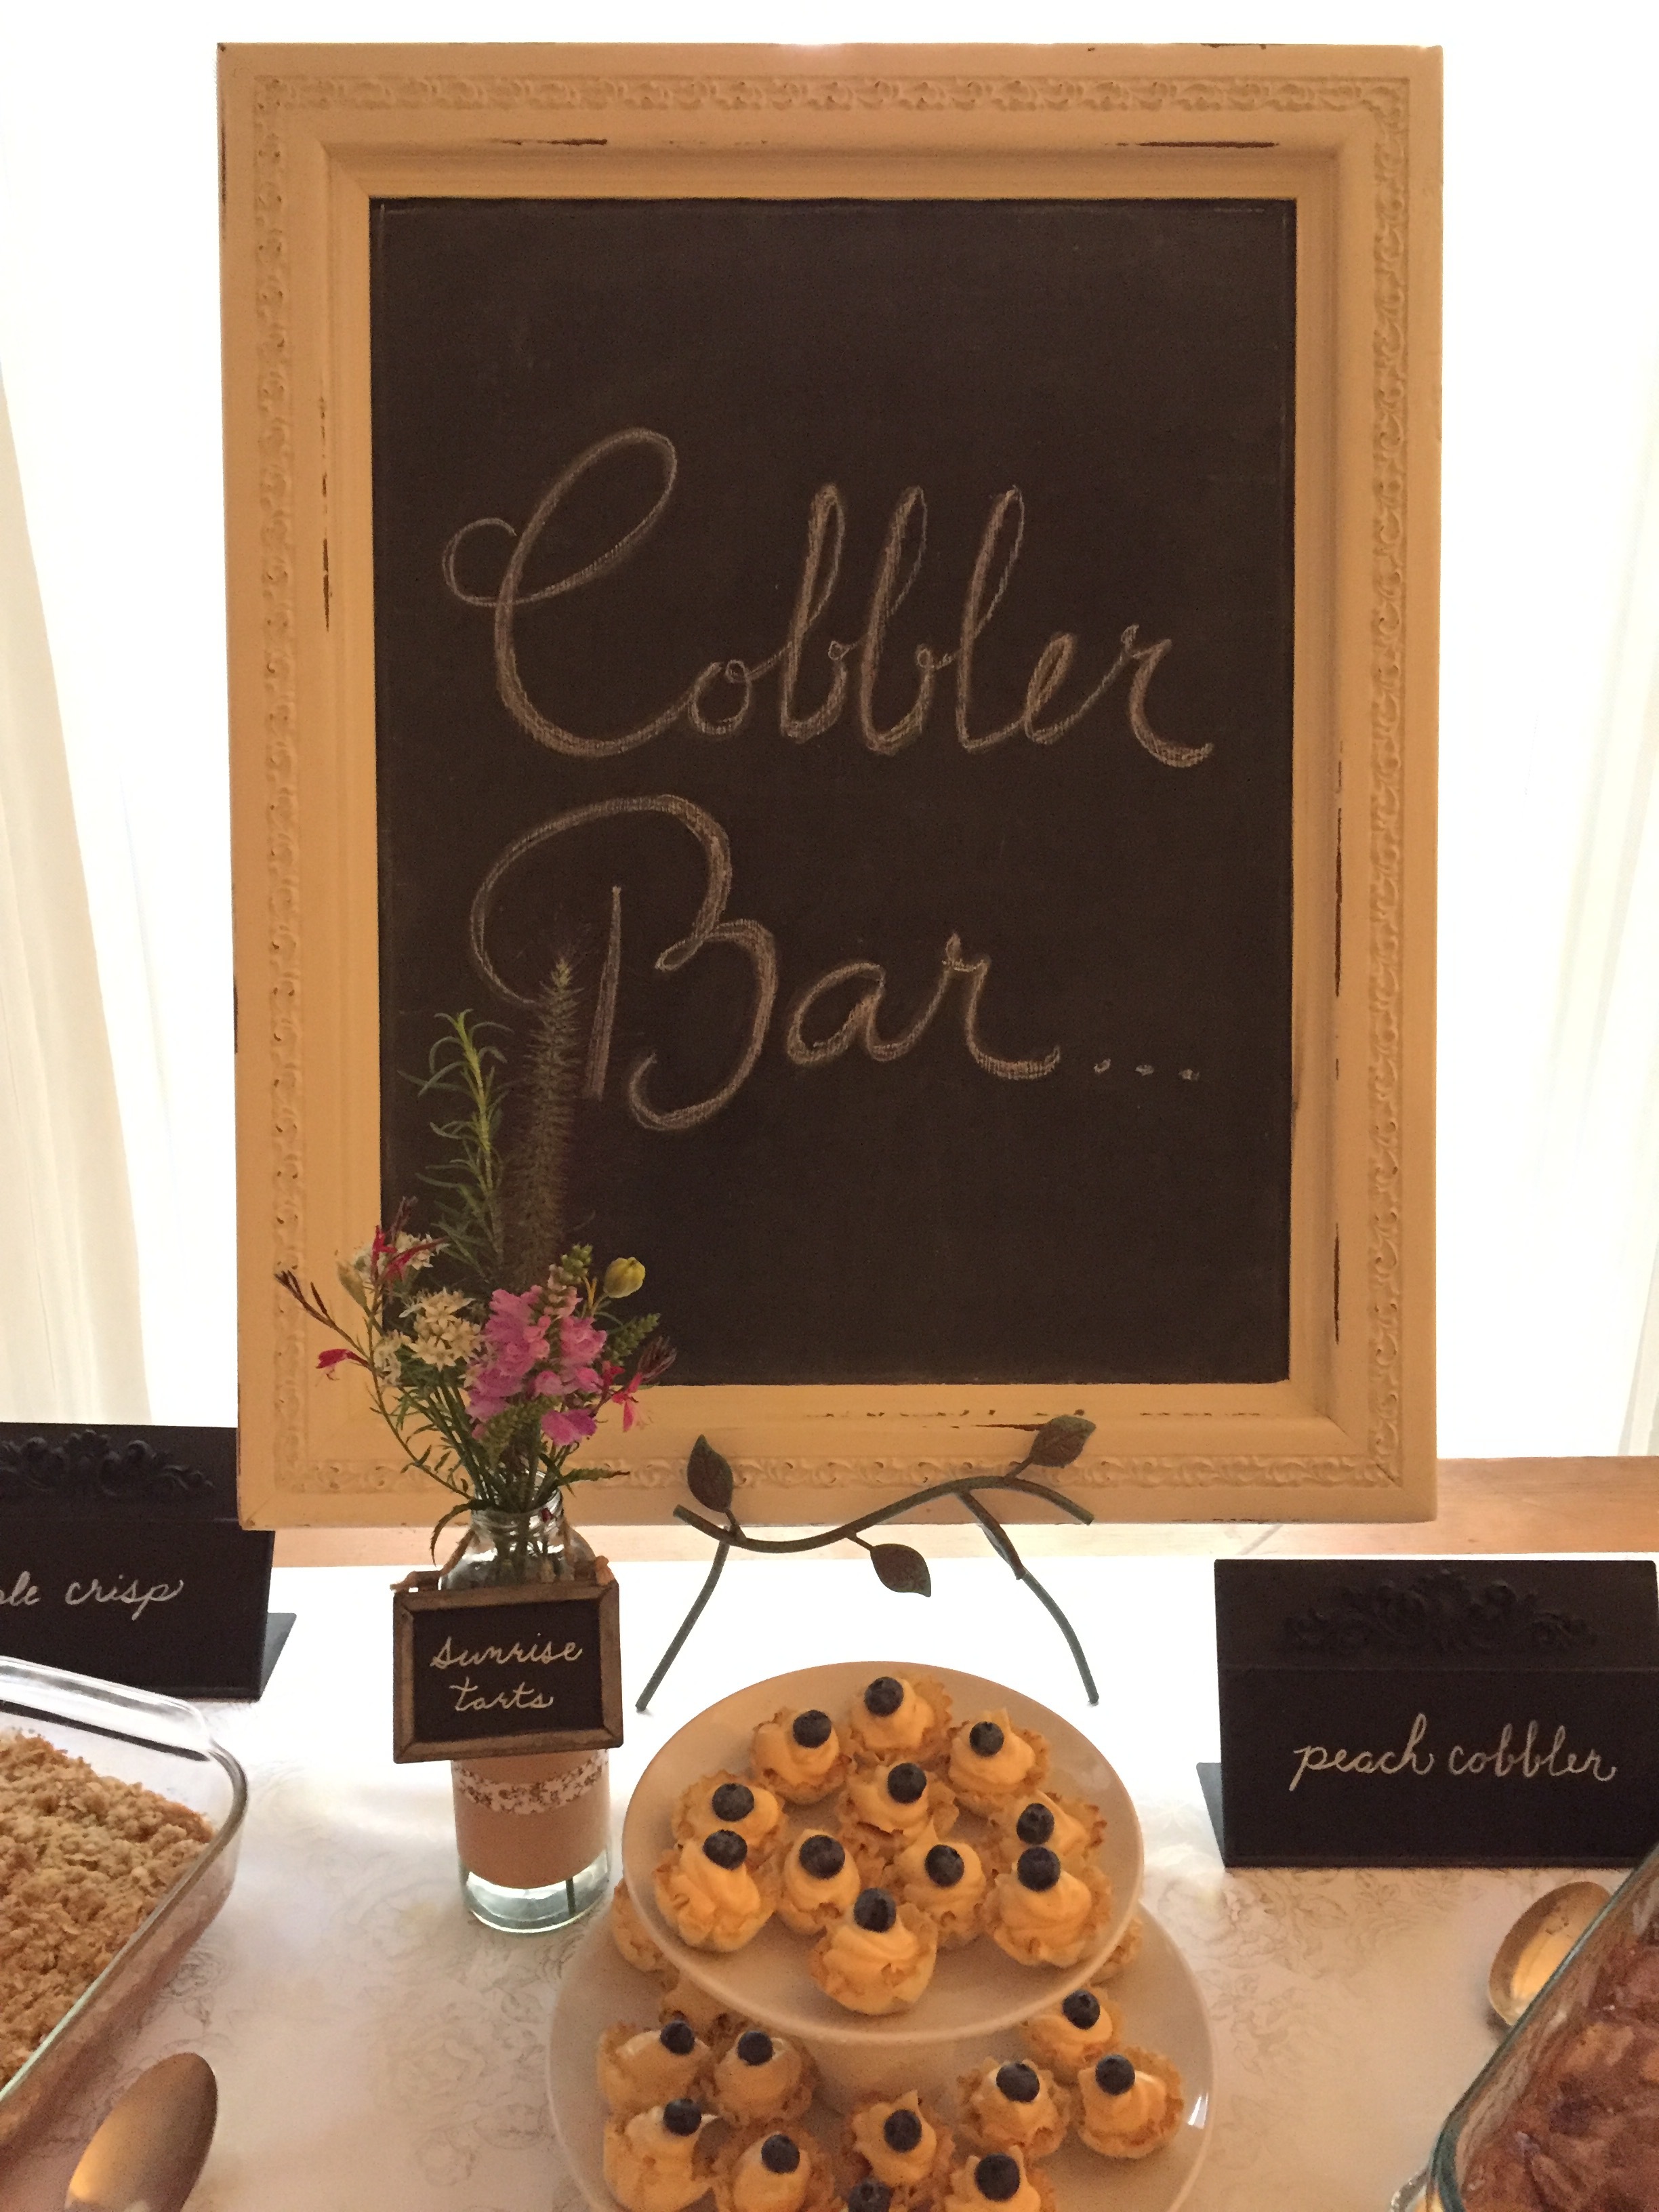 cobbler bar